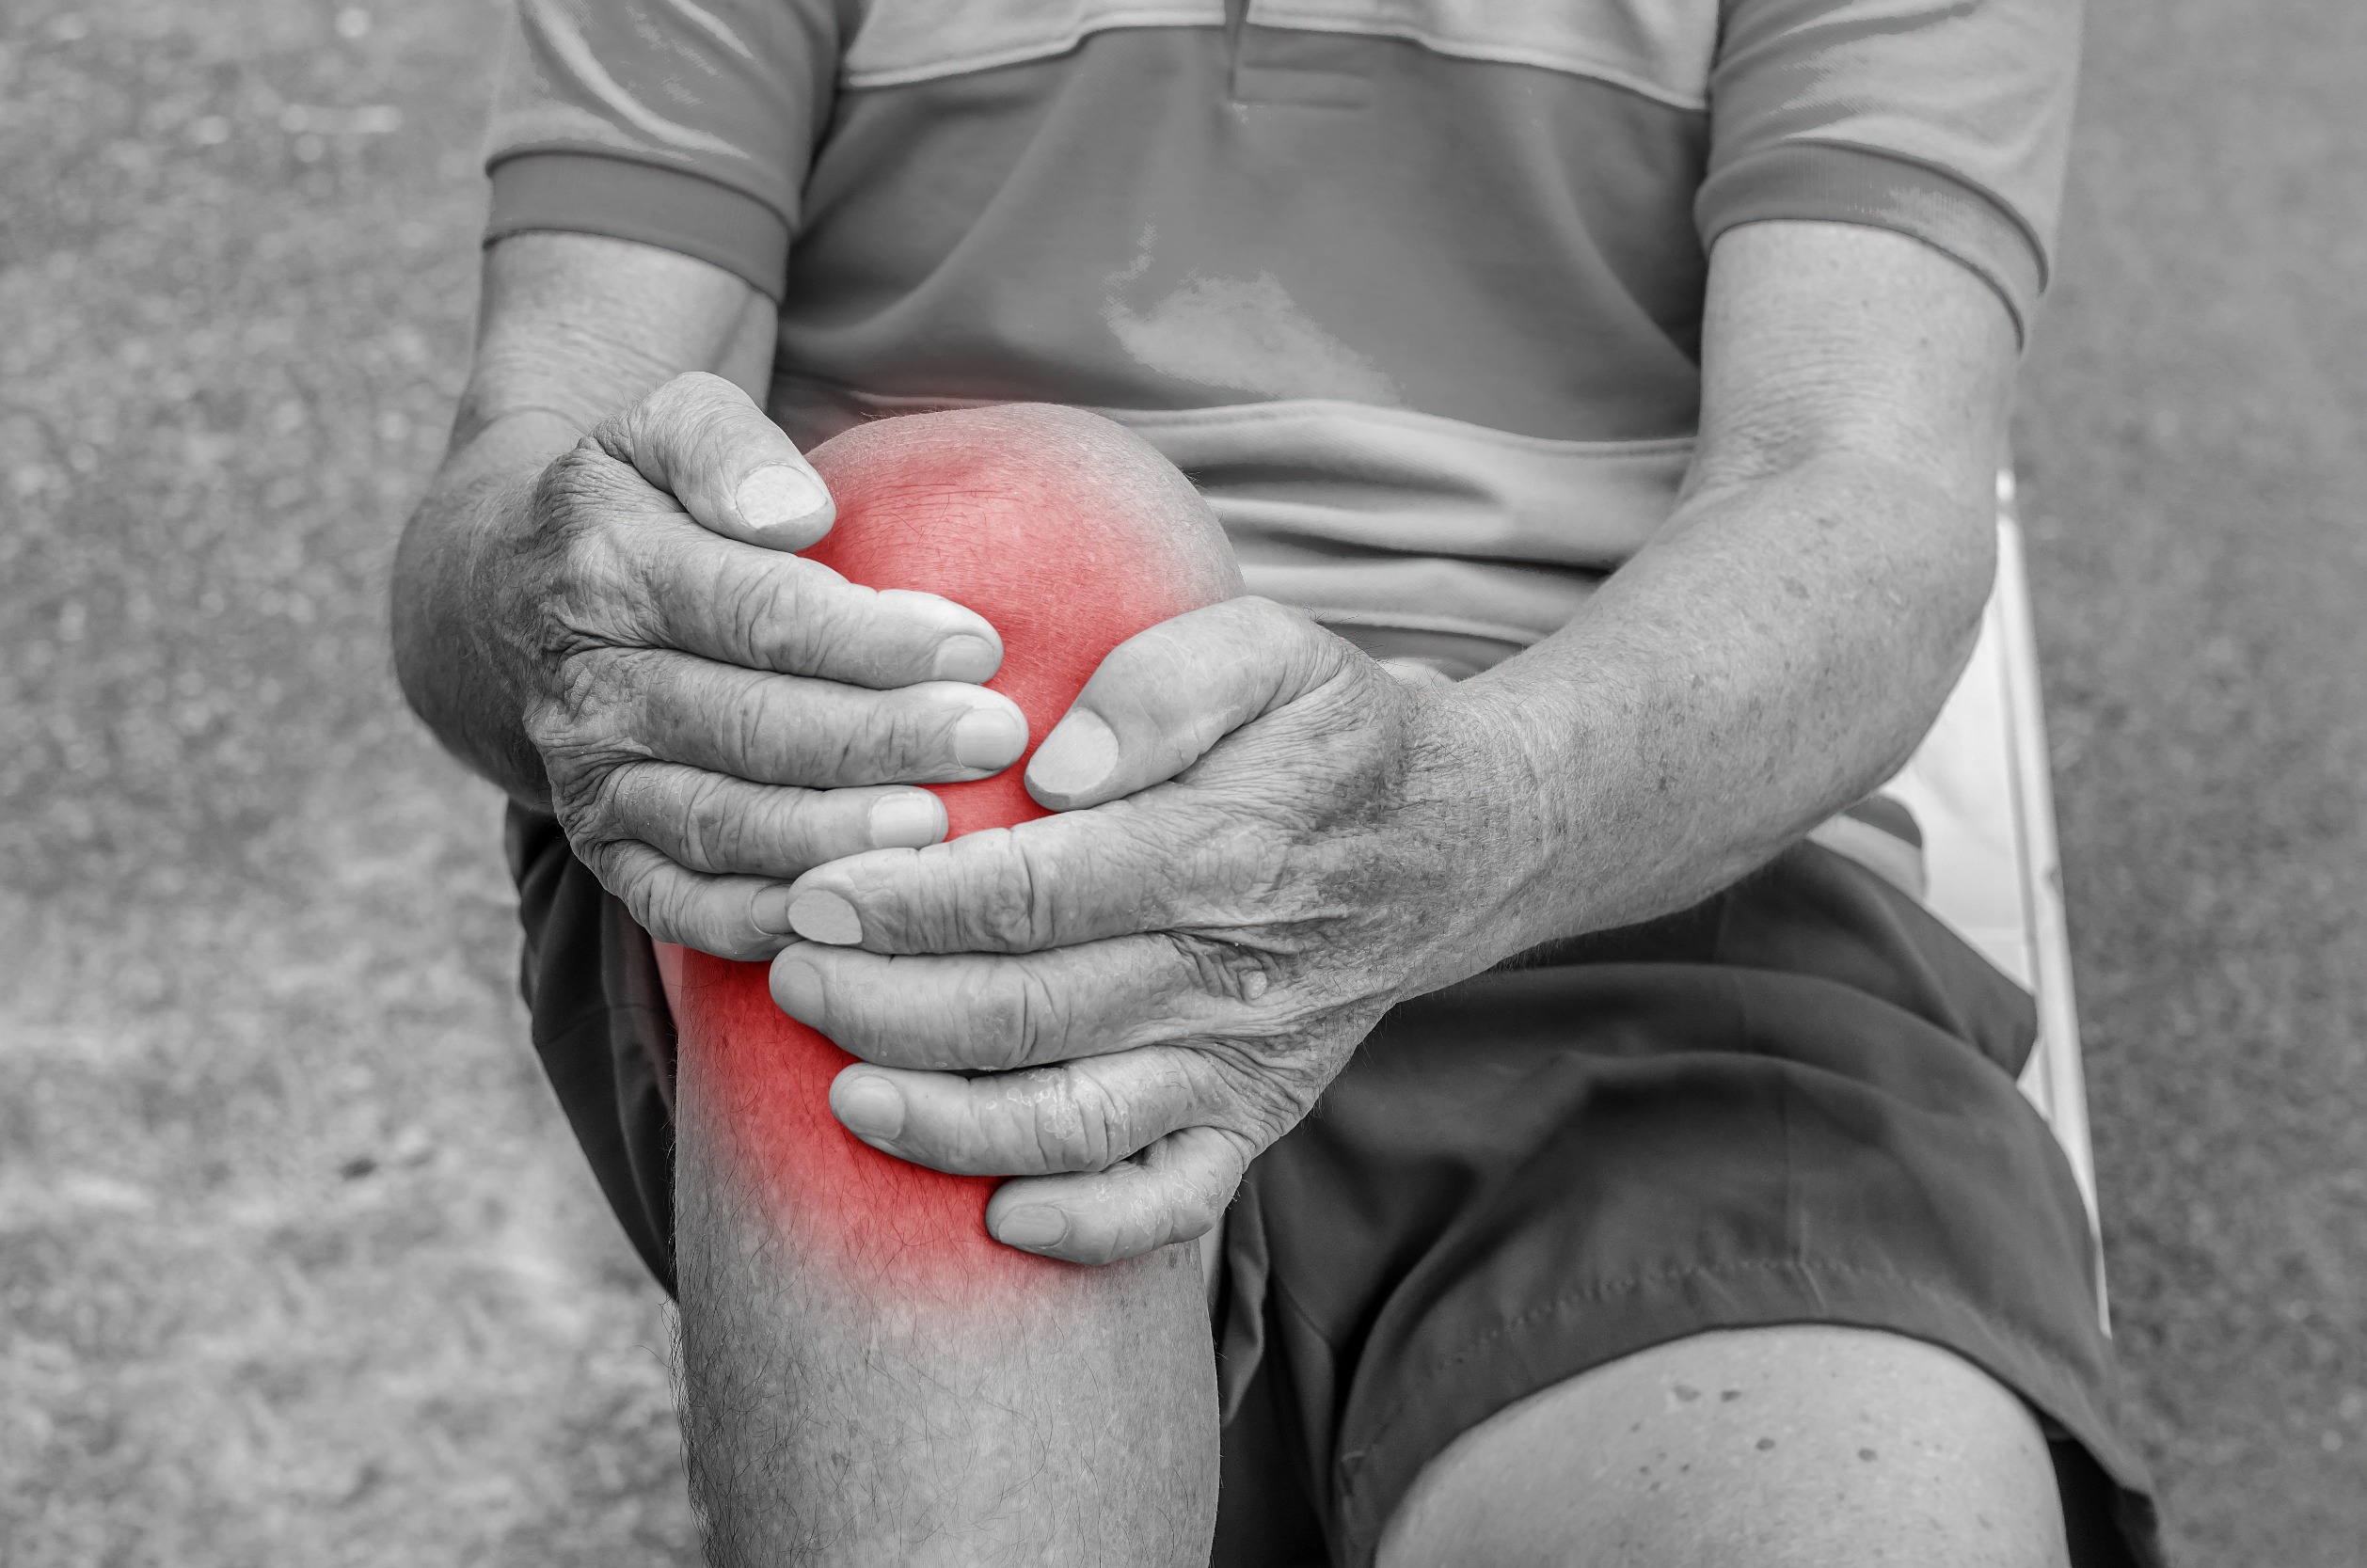 osteoarthritic knee pain